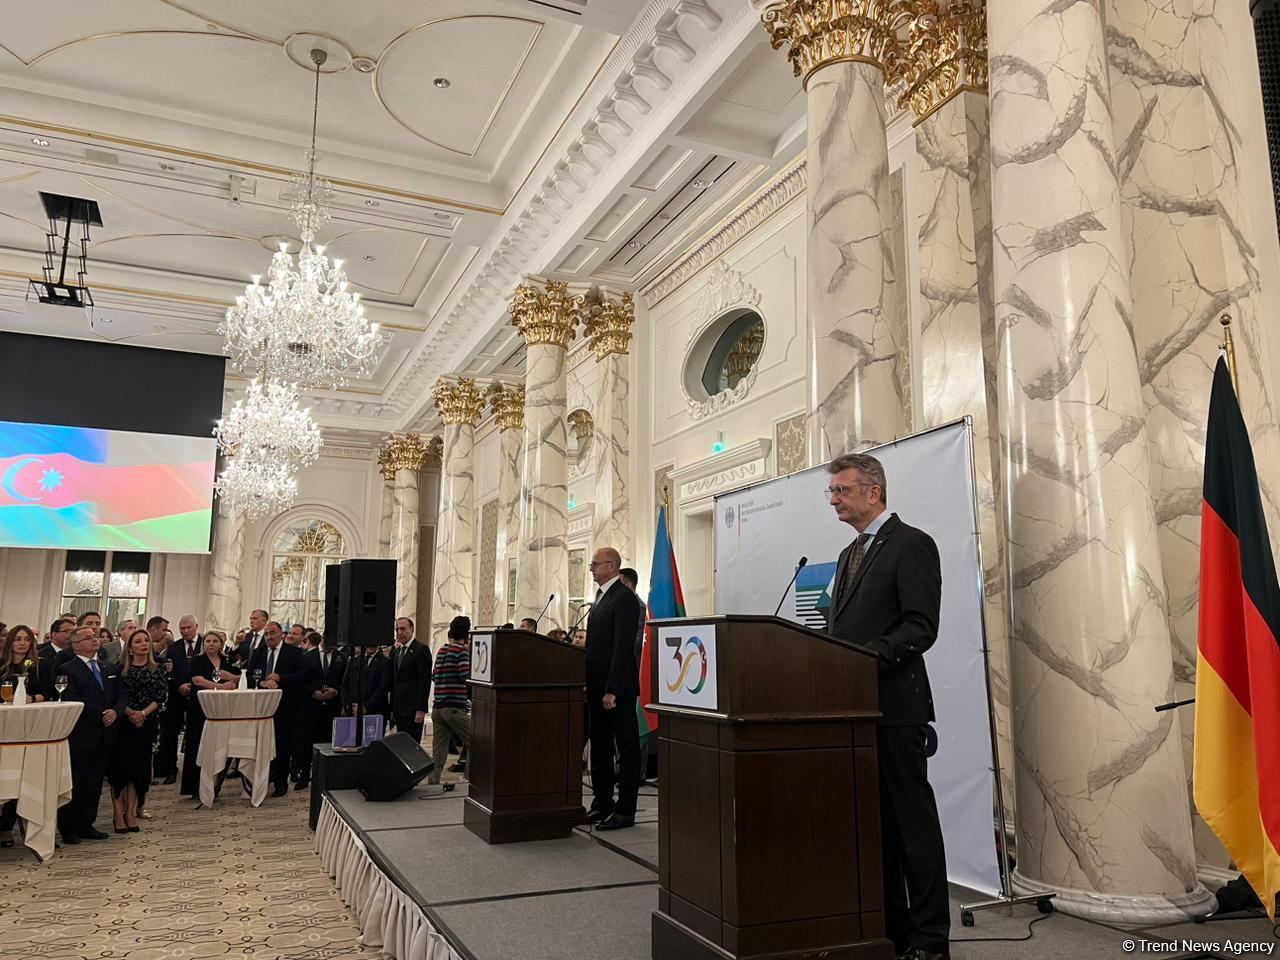 Германия с оптимизмом смотрит на перспективы развития отношений с Азербайджаном - посол (ФОТО)